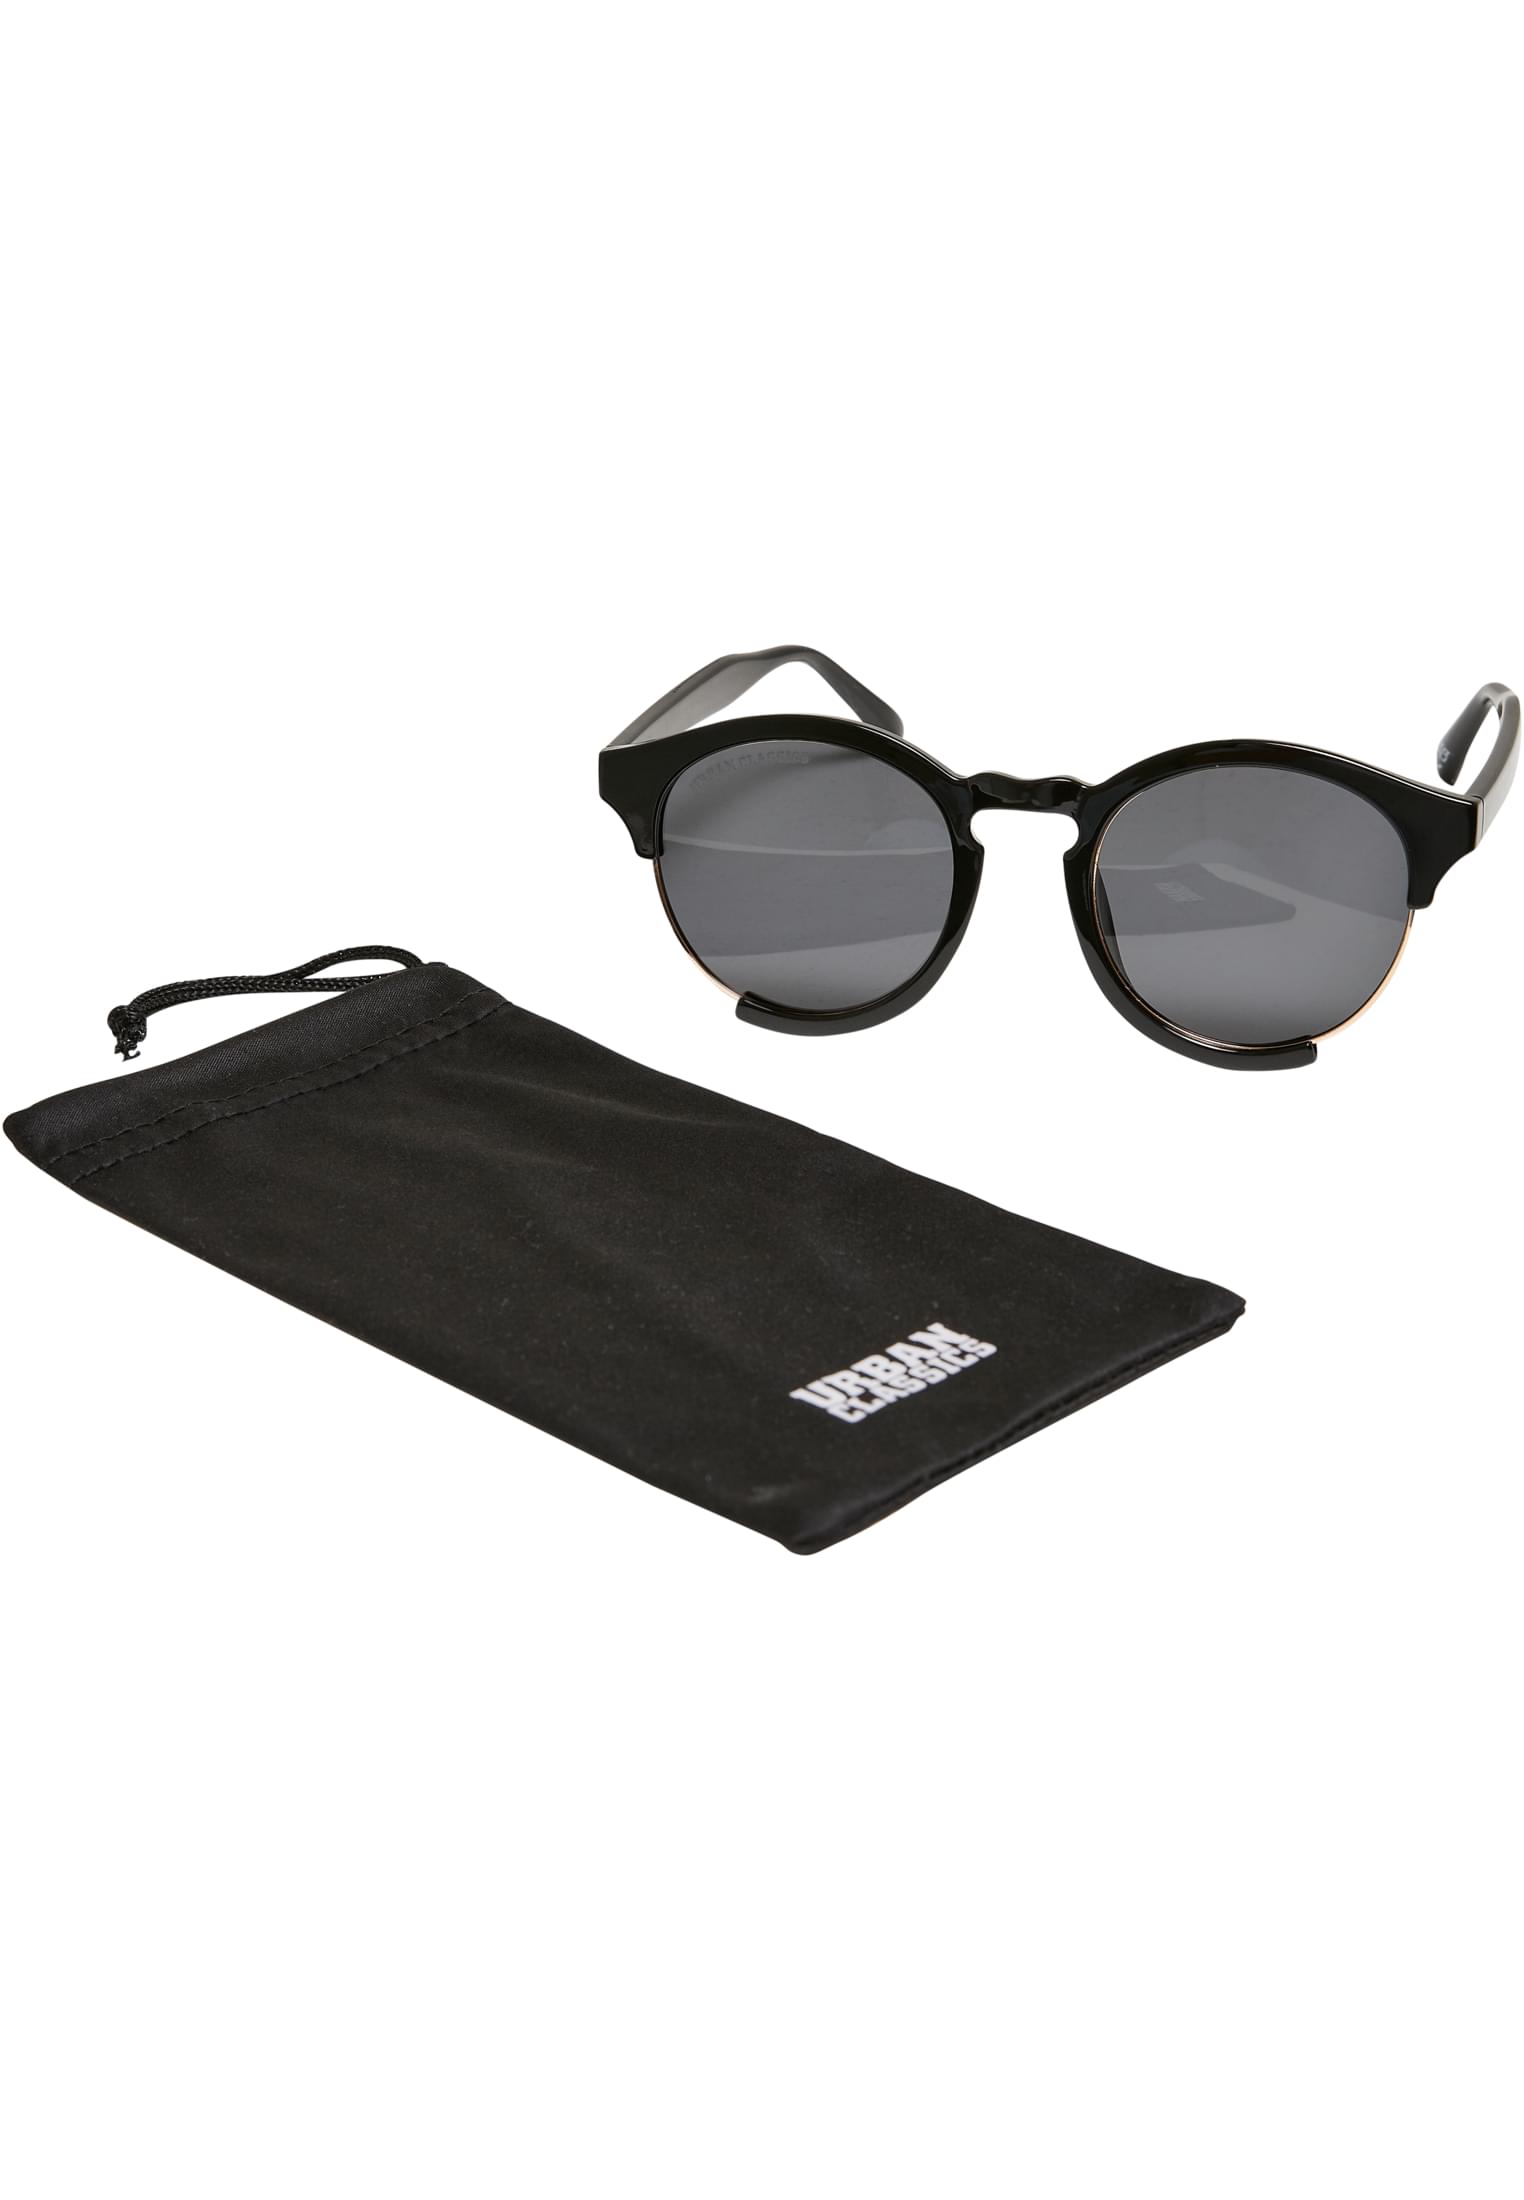 Sunglasses Coral Bay Black